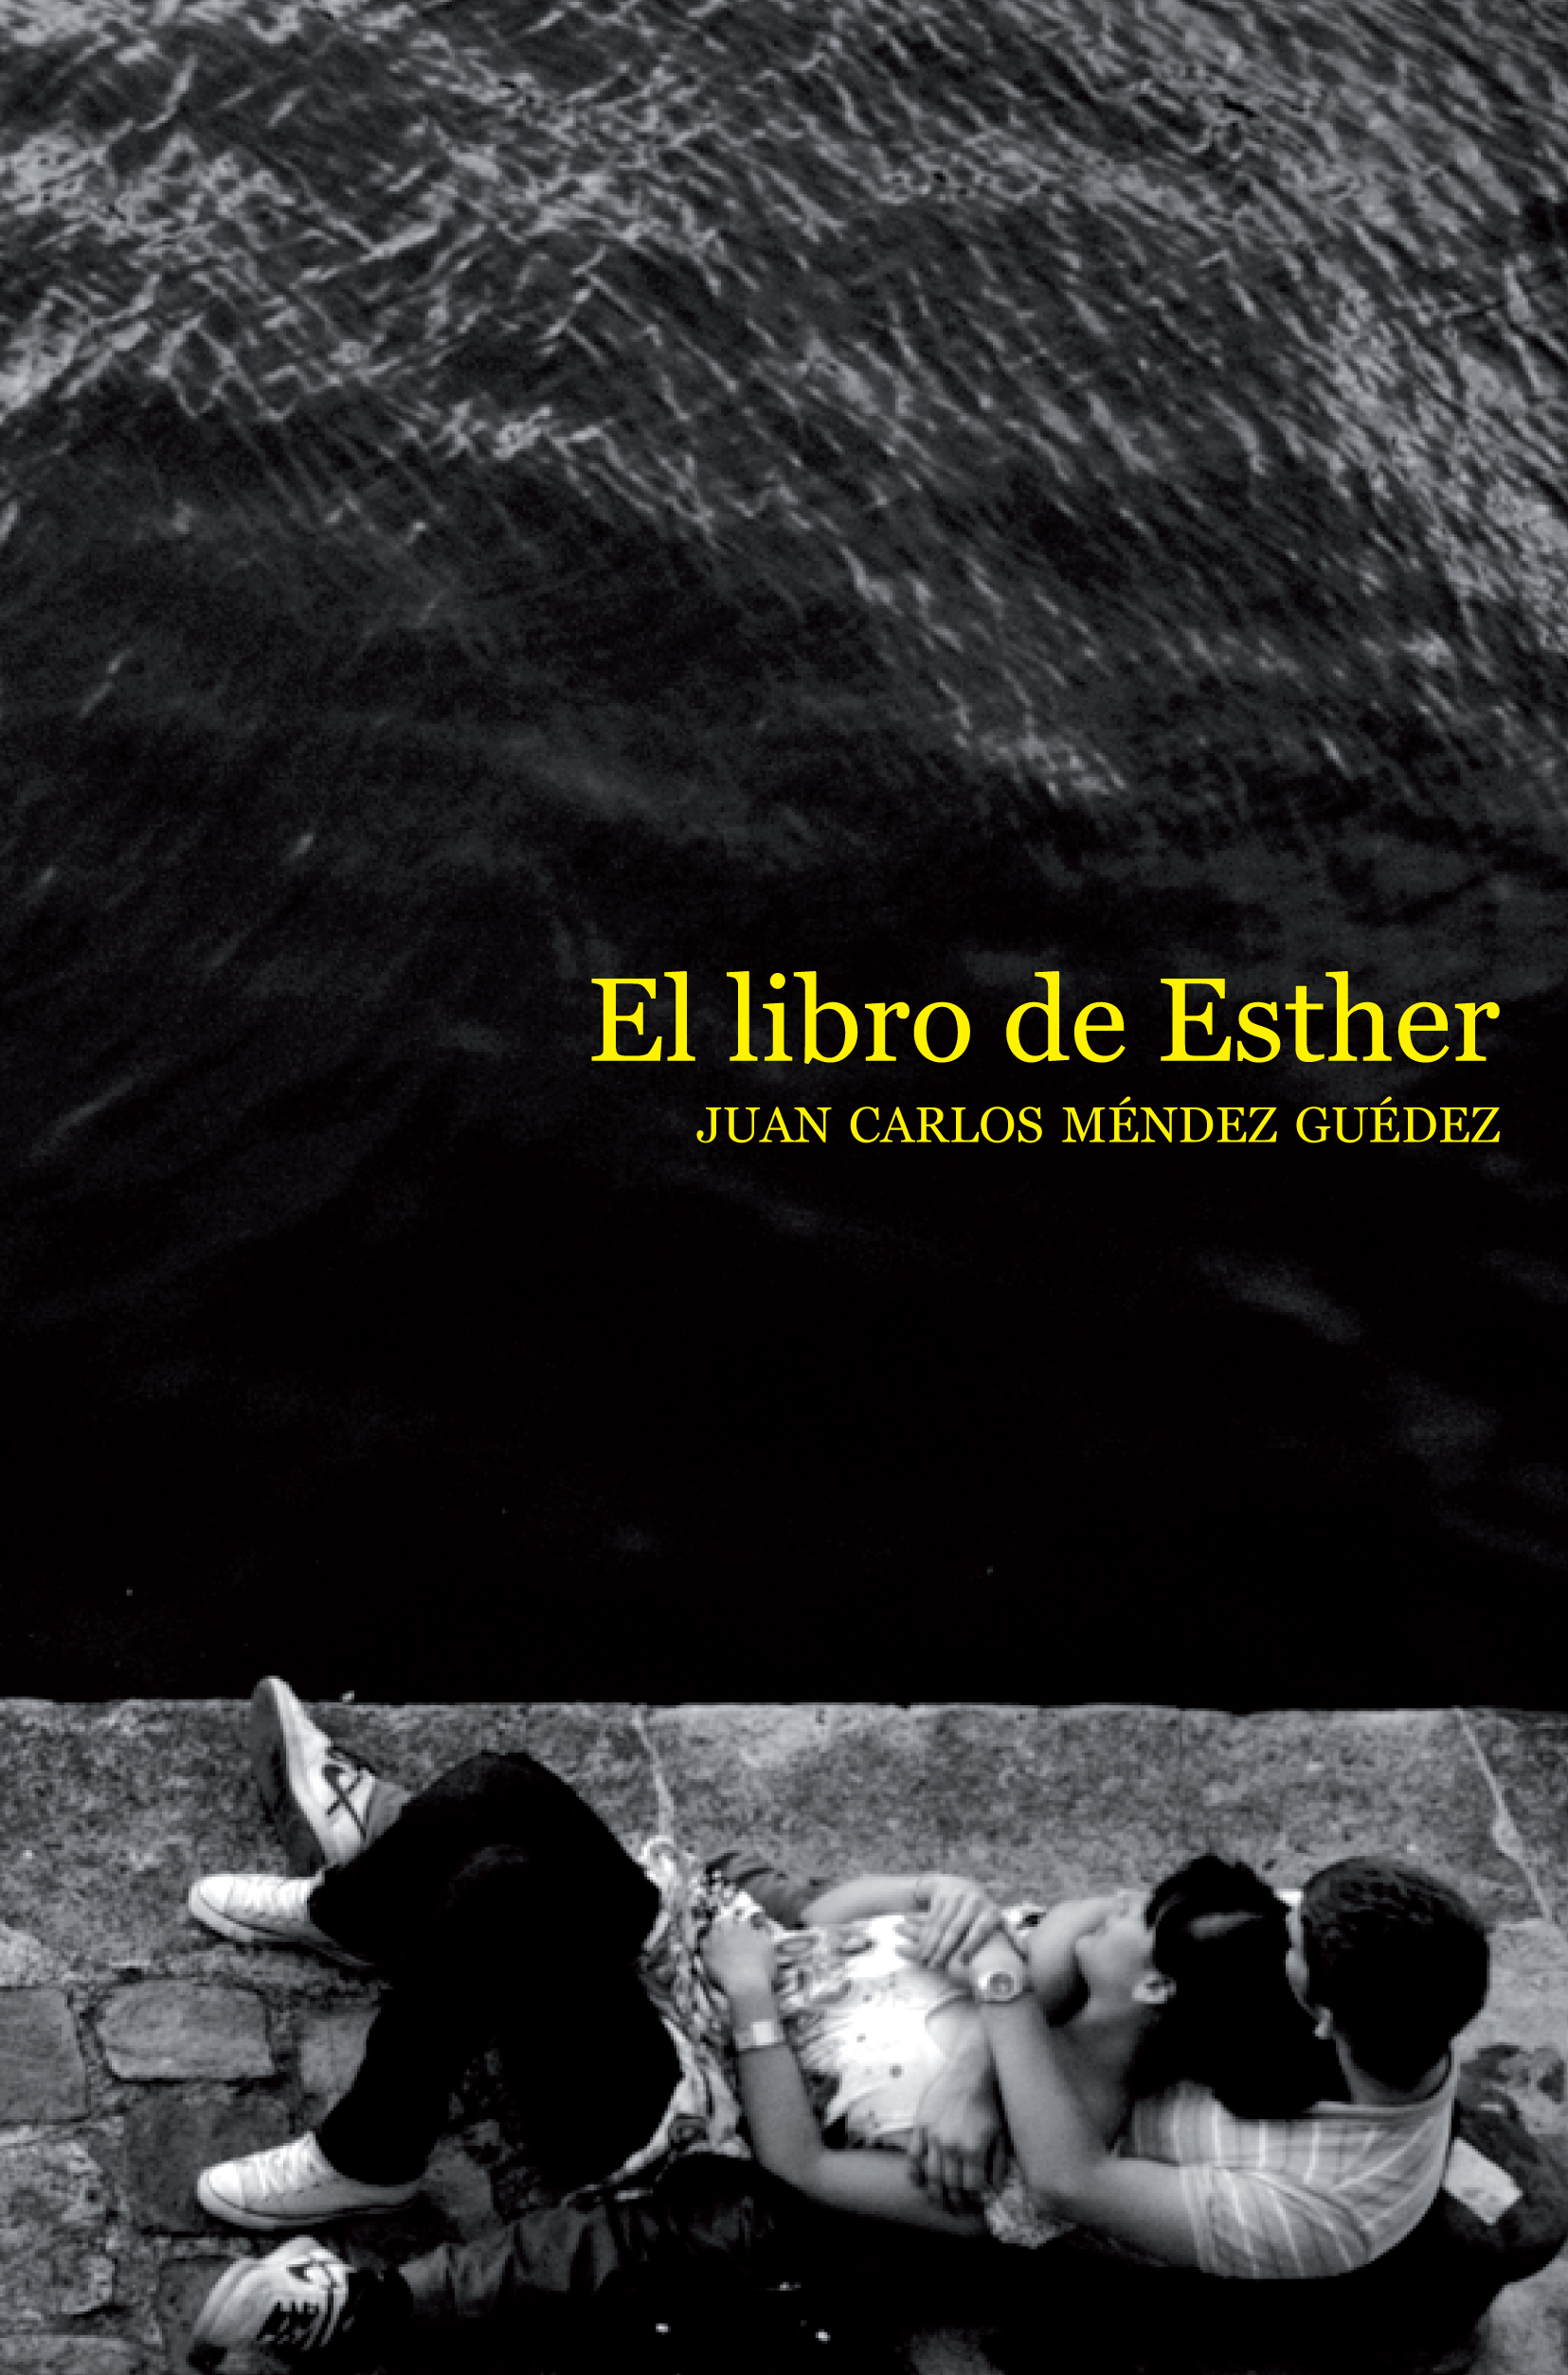 El libro de Esther. Juan Carlos Méndez Guédez. Foto: ideasdebabel.wp.com